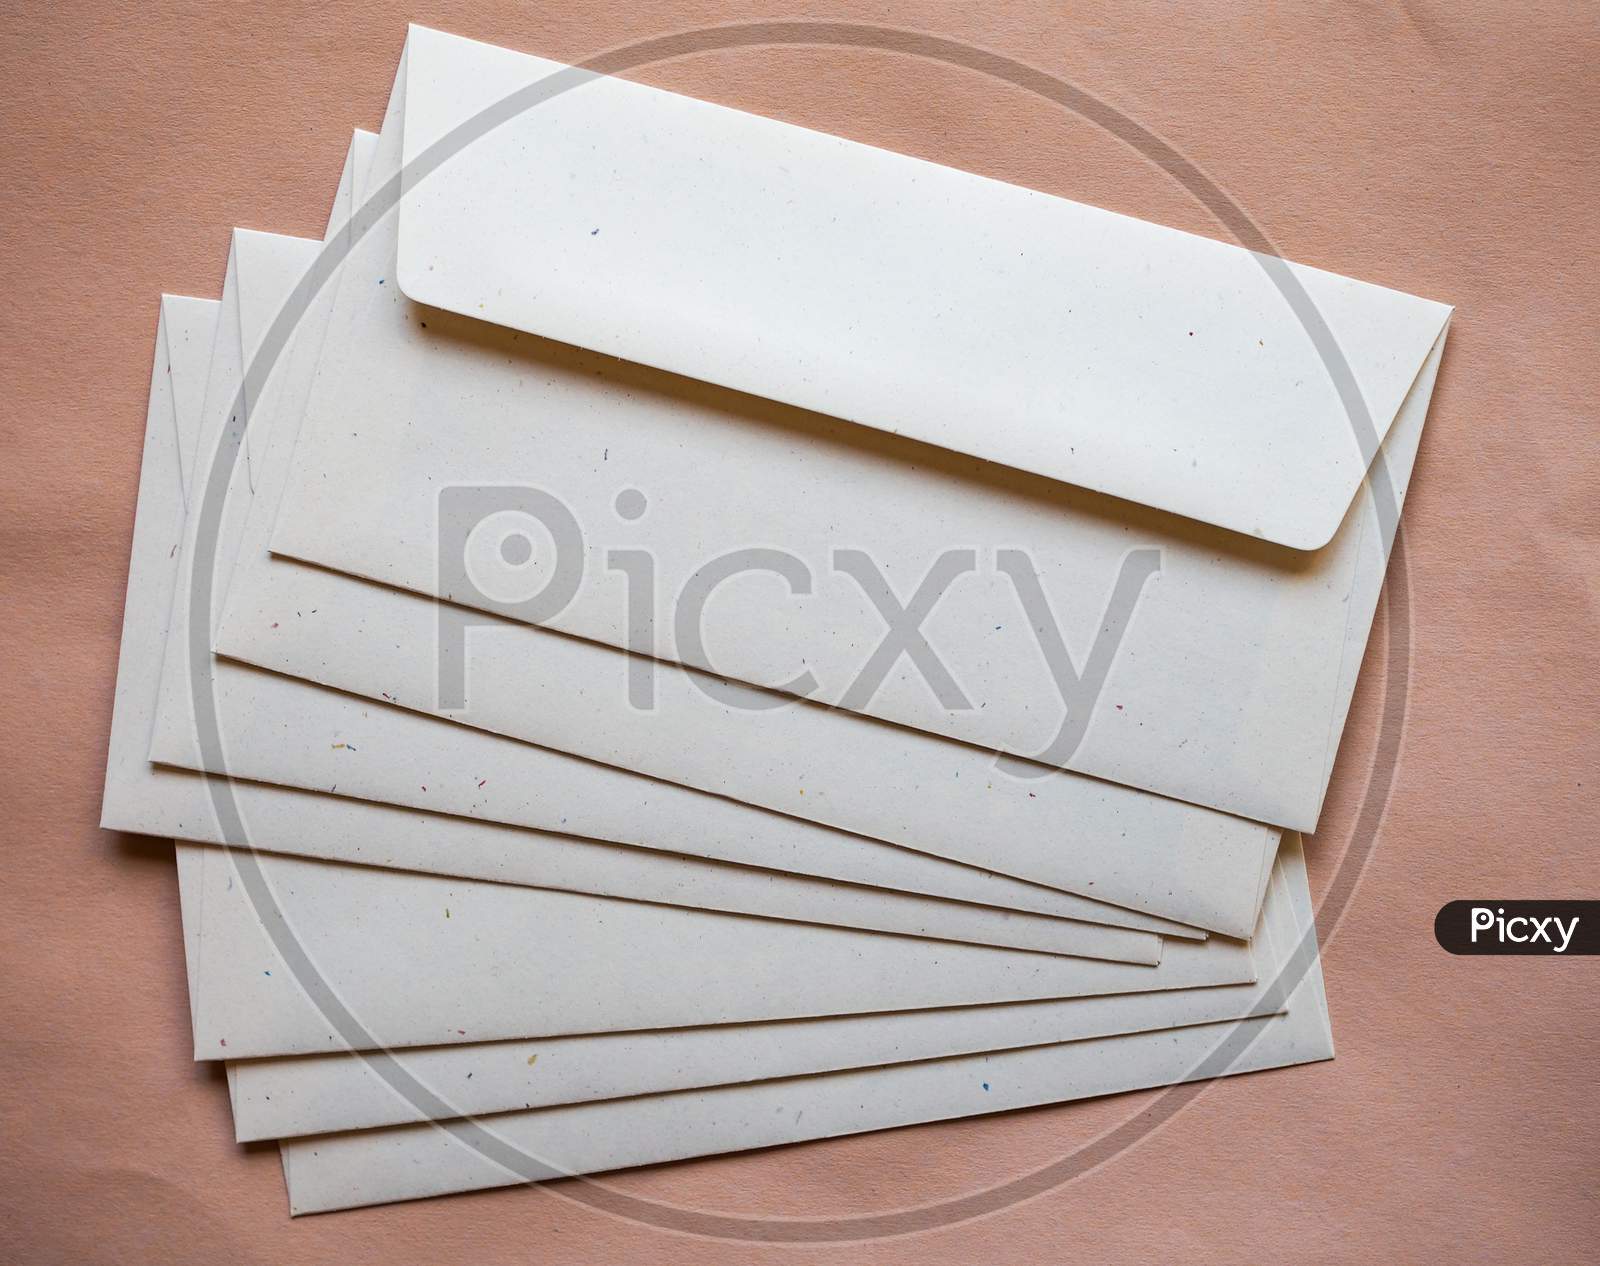 Many Letter Envelopes